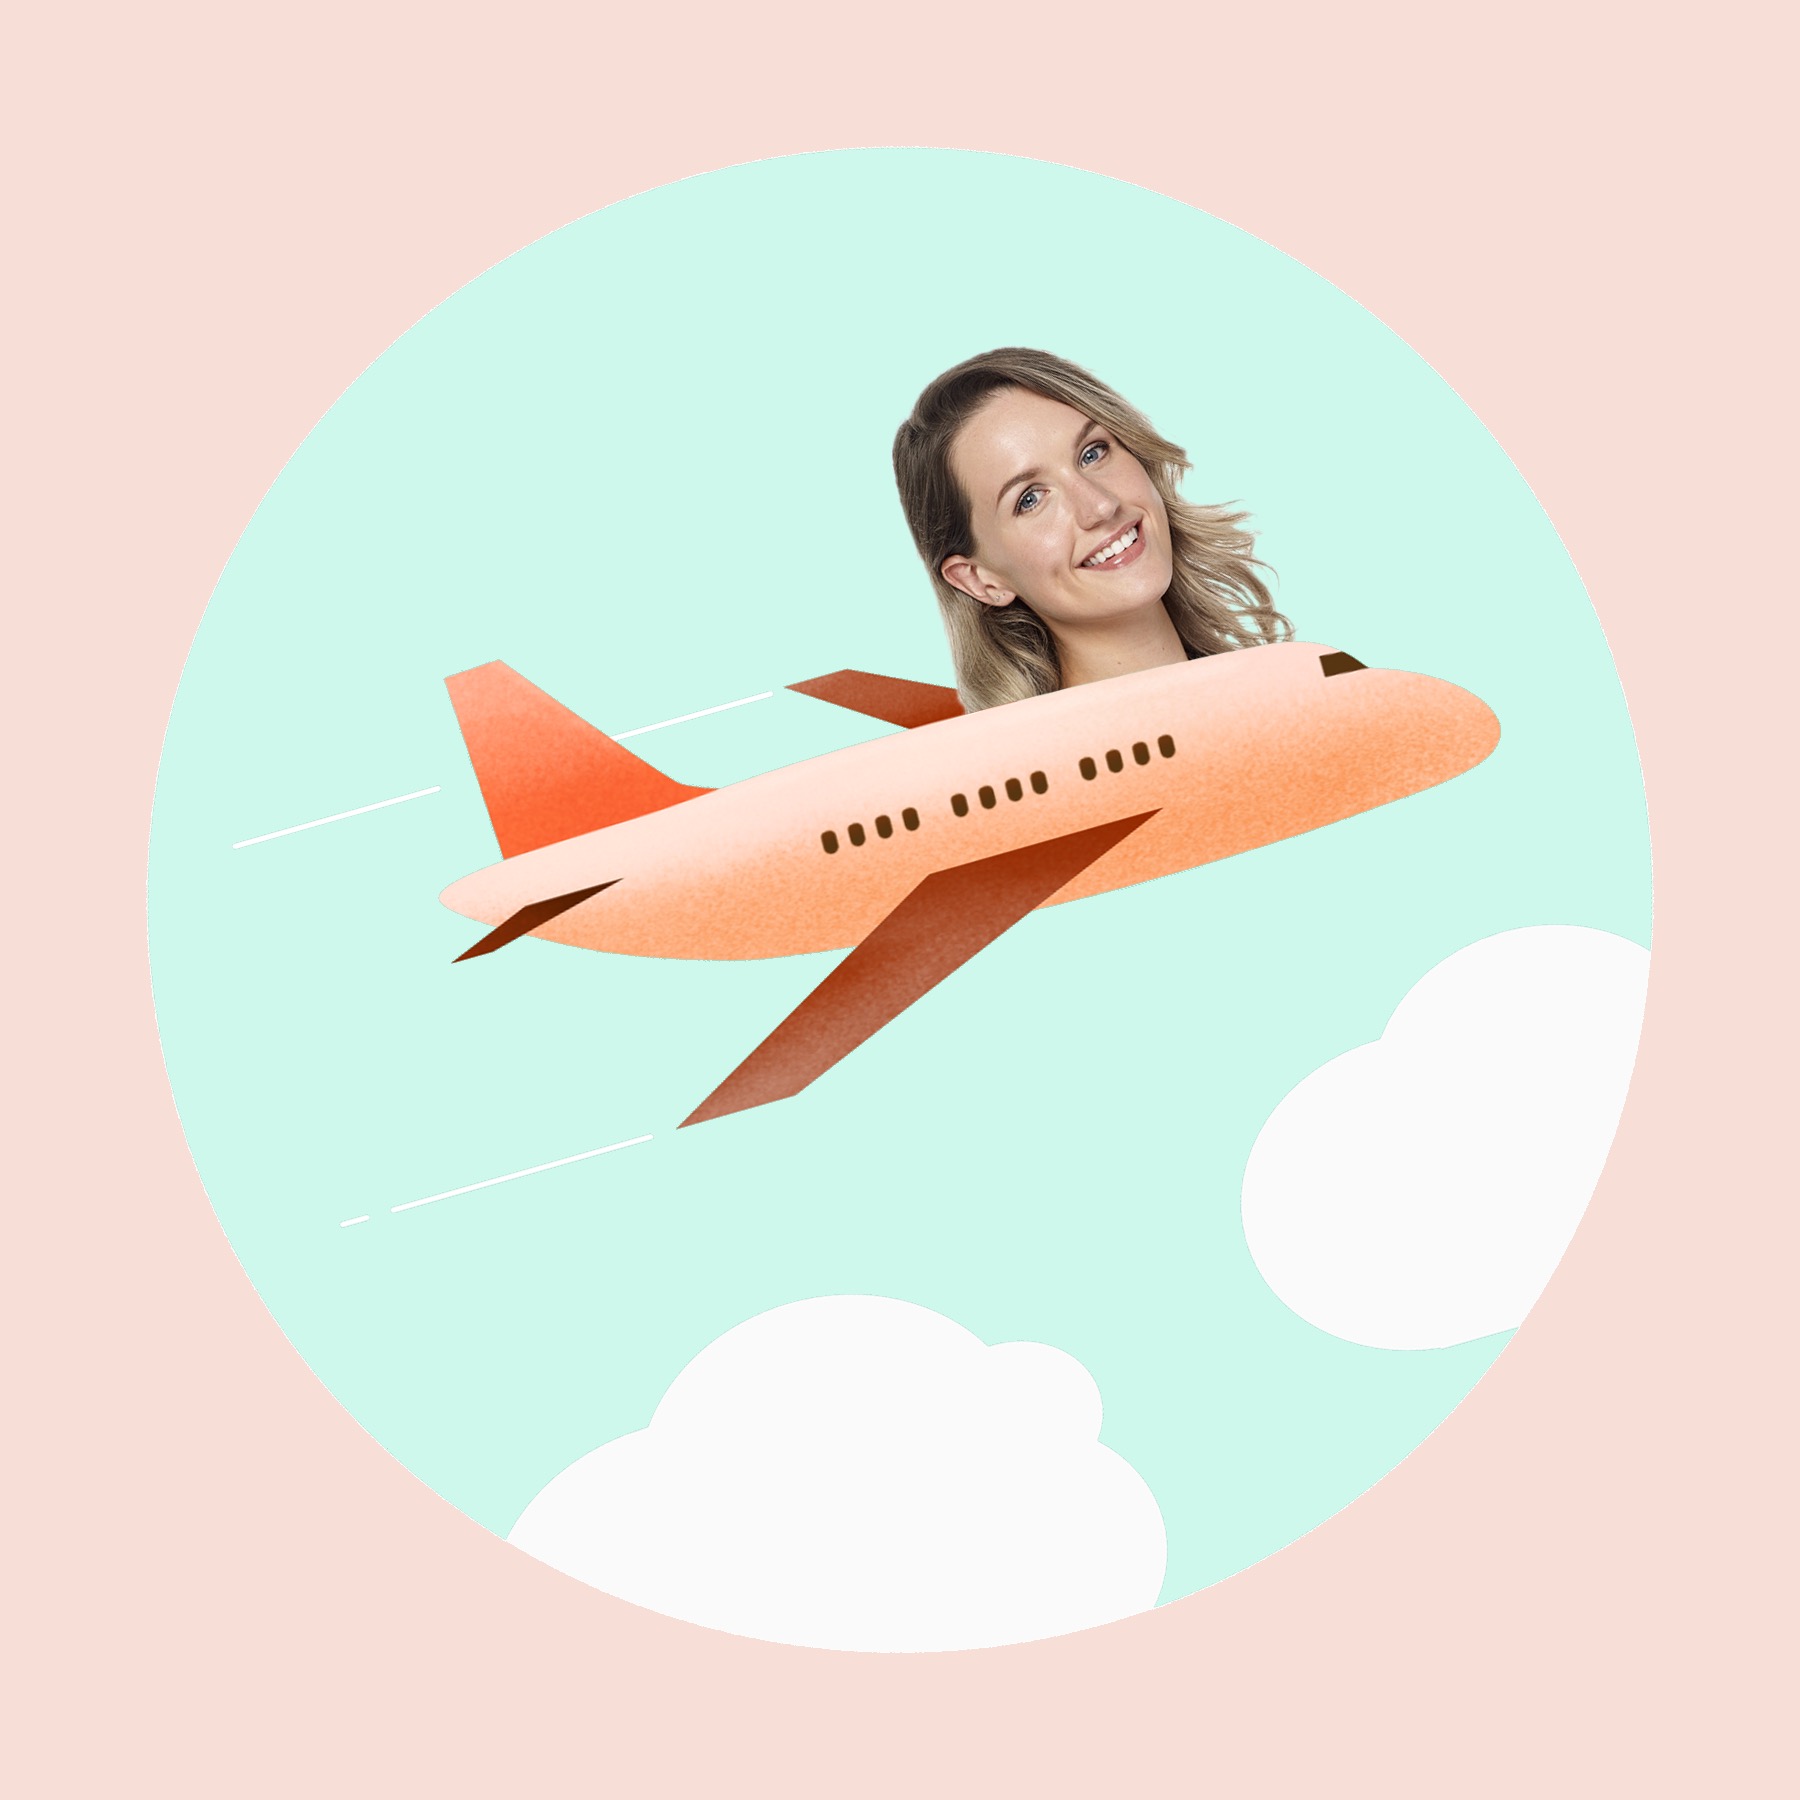 Girl in plane